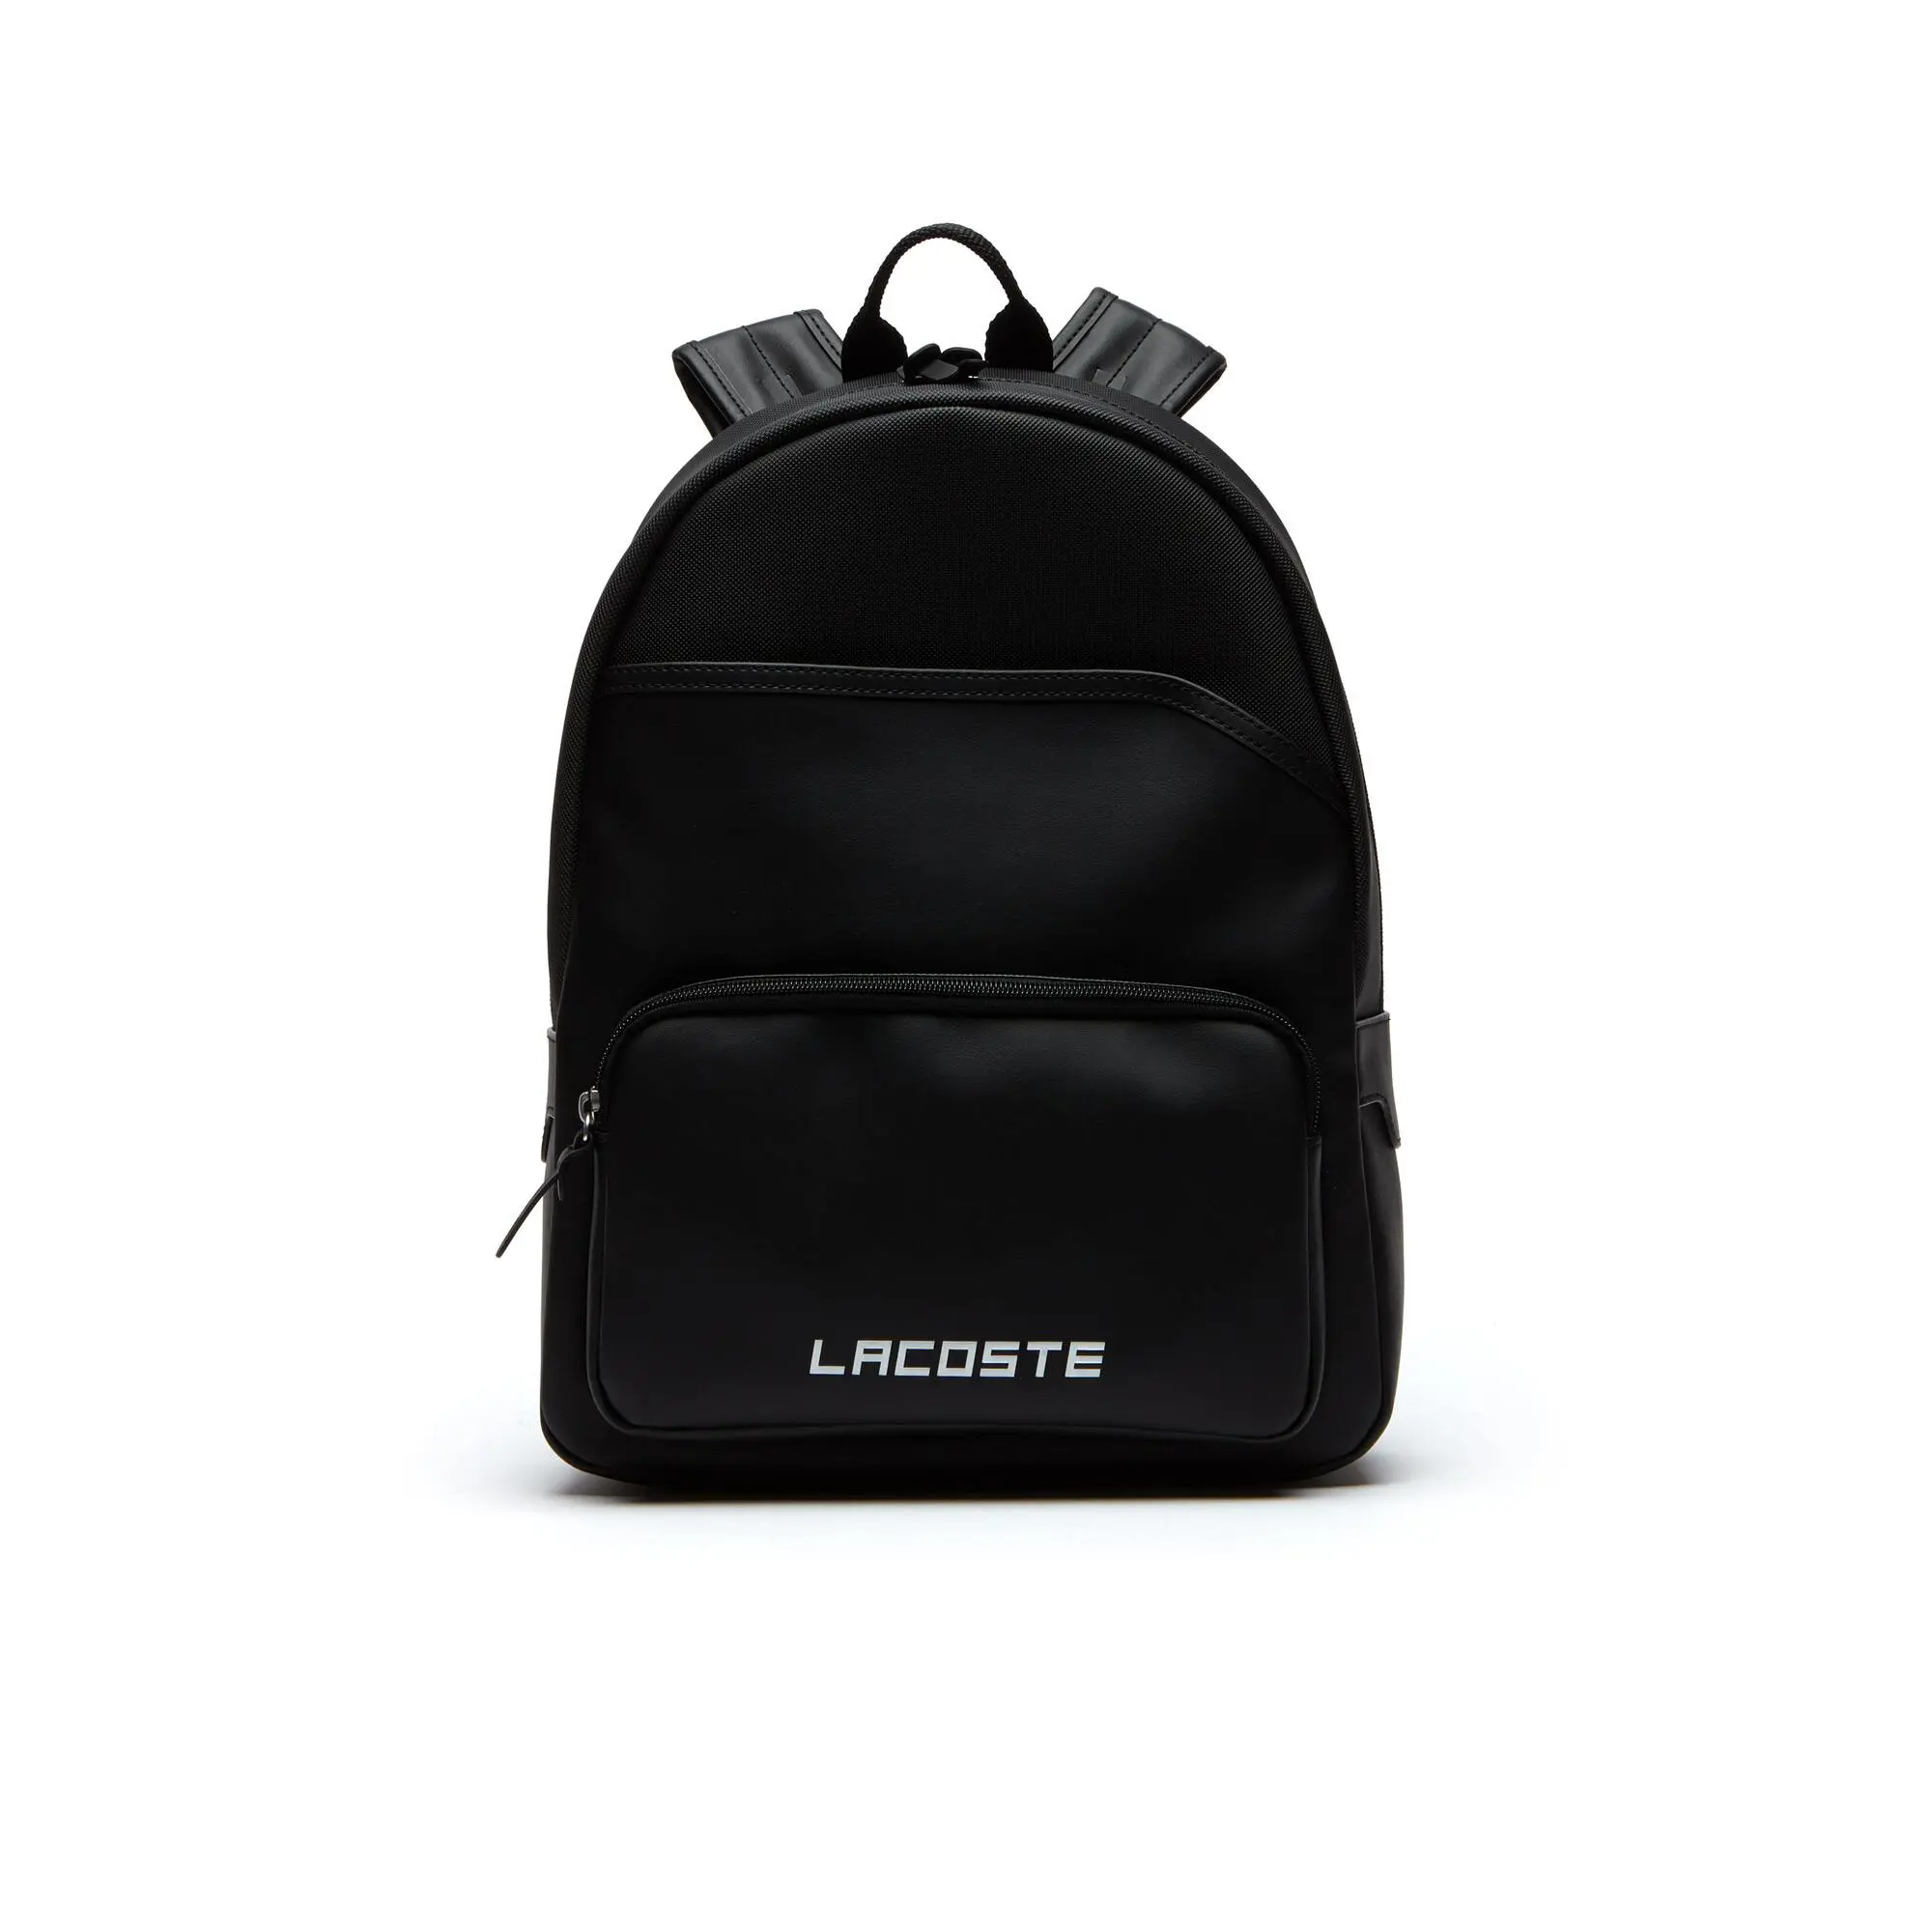 Lacoste Men's Petit Piqué Backpack. 2